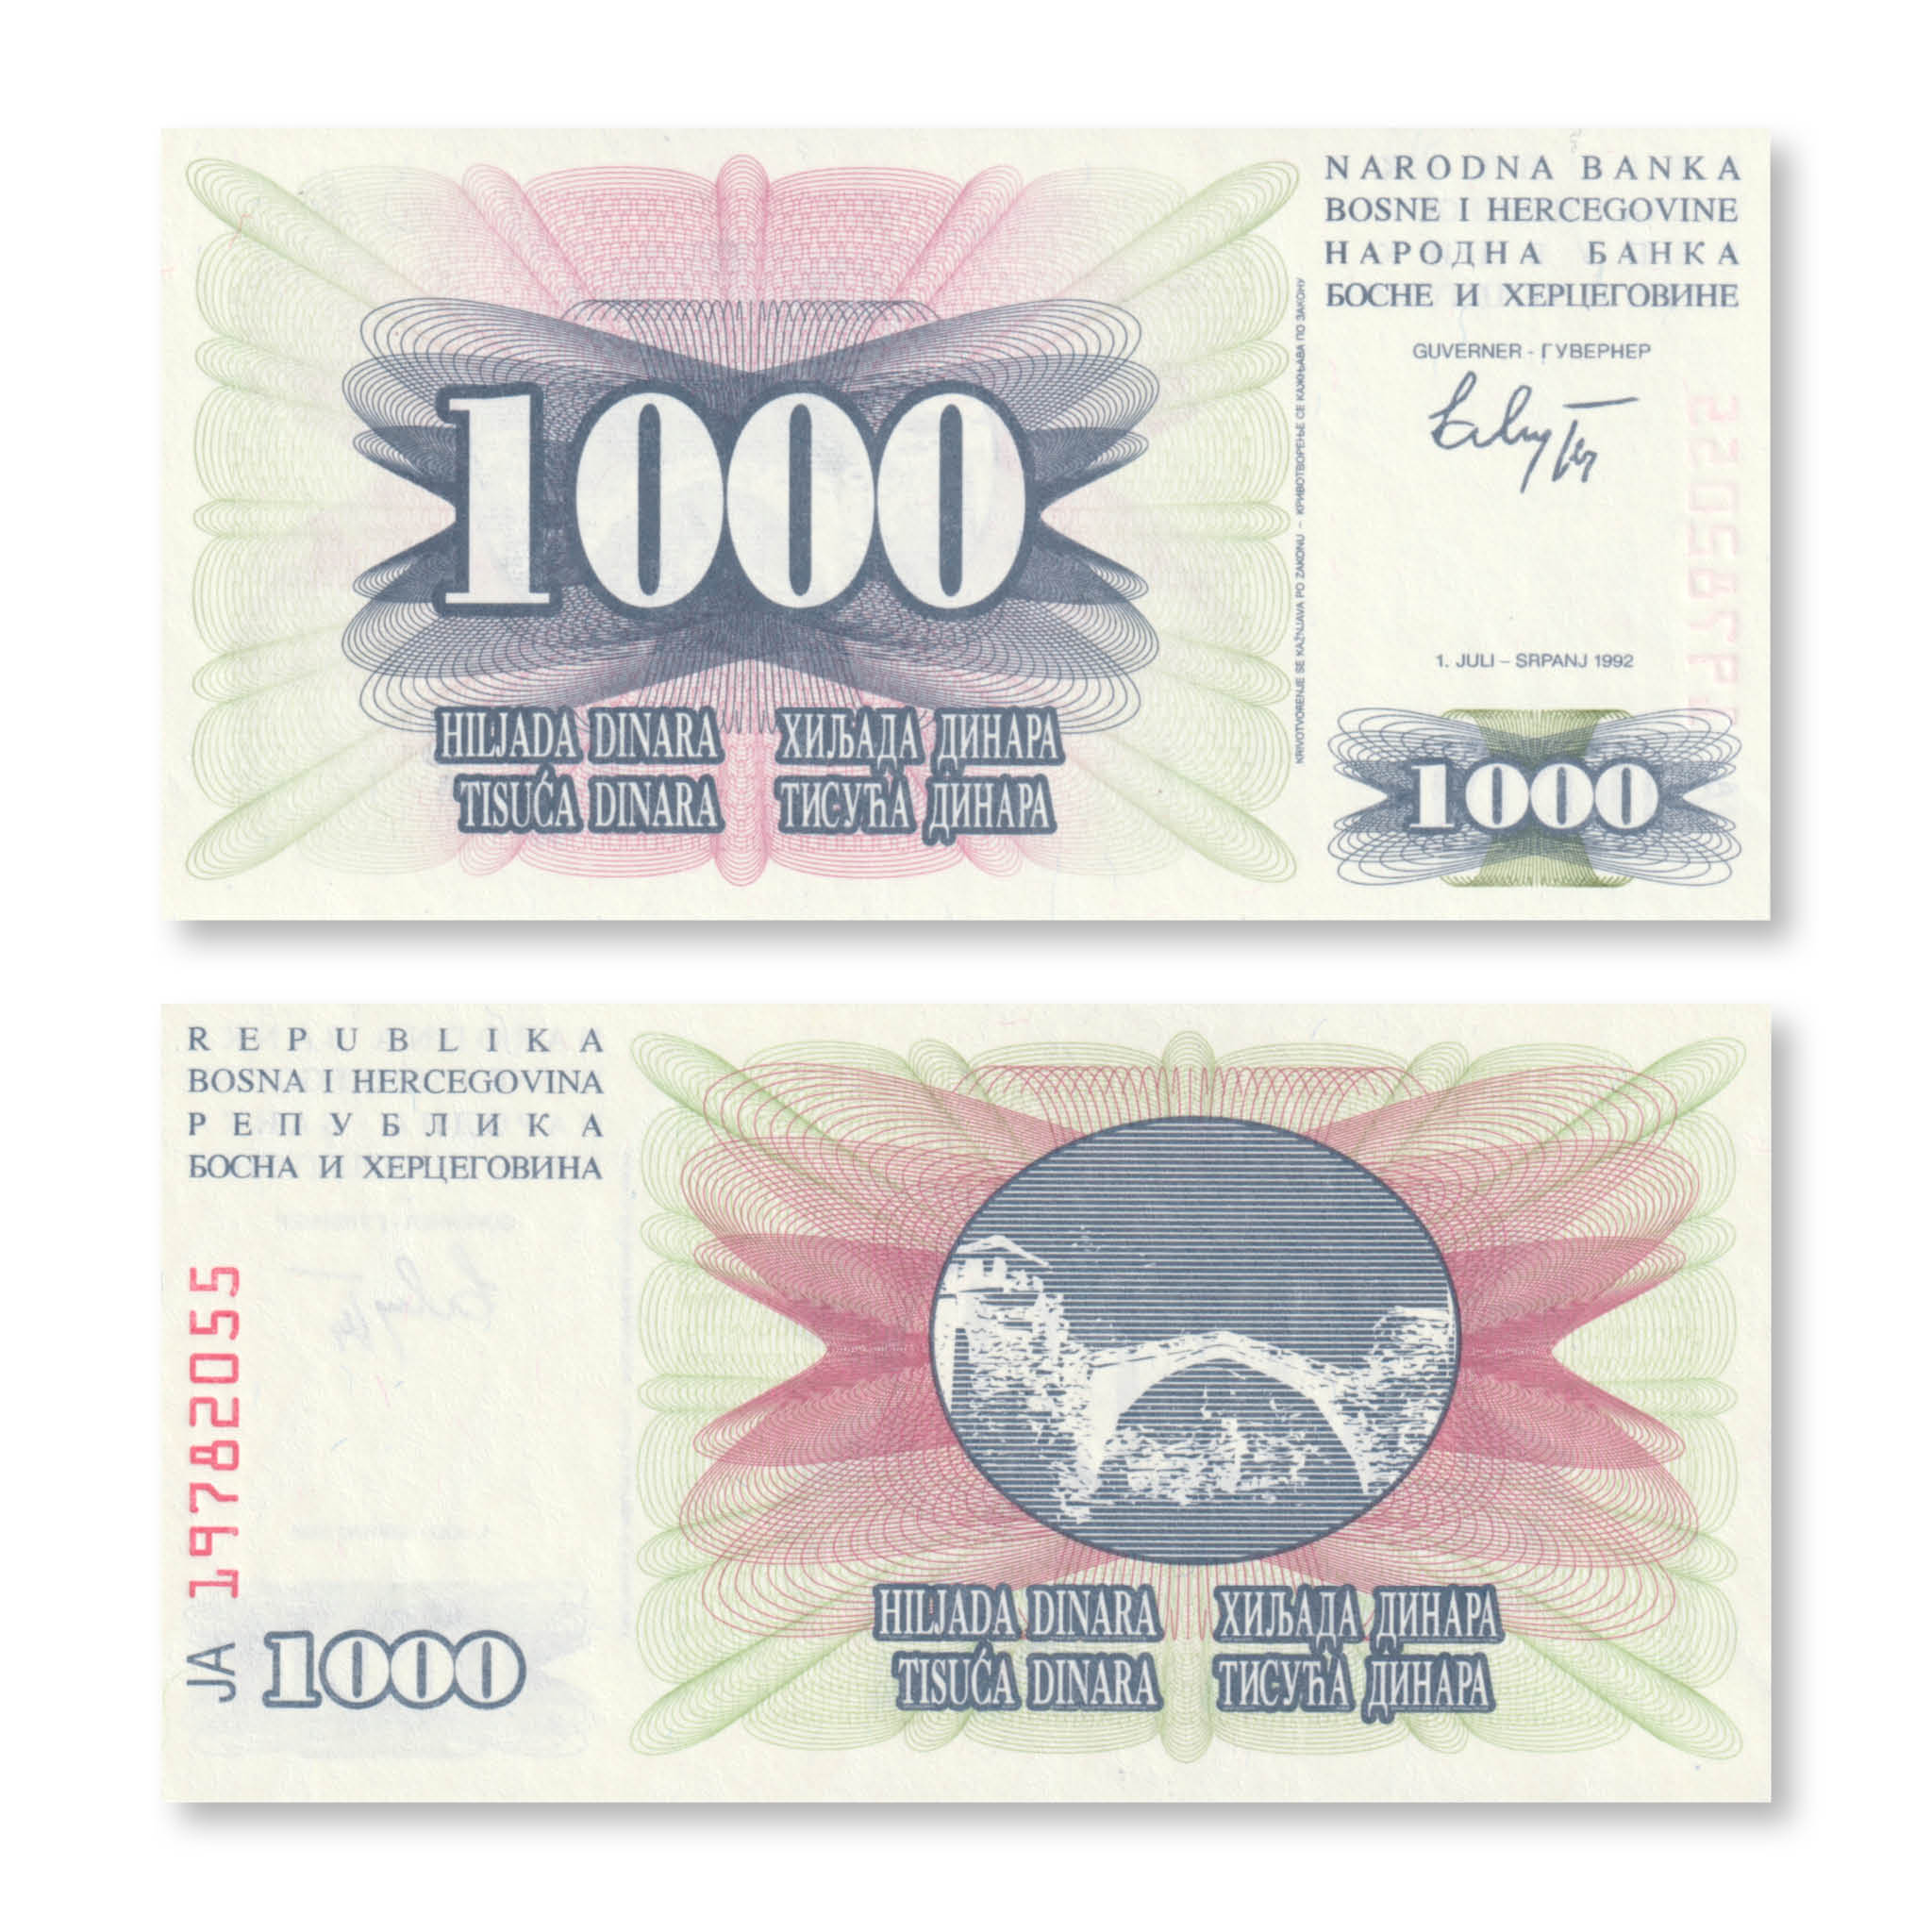 Bosnia 1000 Dinars, 1992, B118a, P15a, UNC - Robert's World Money - World Banknotes